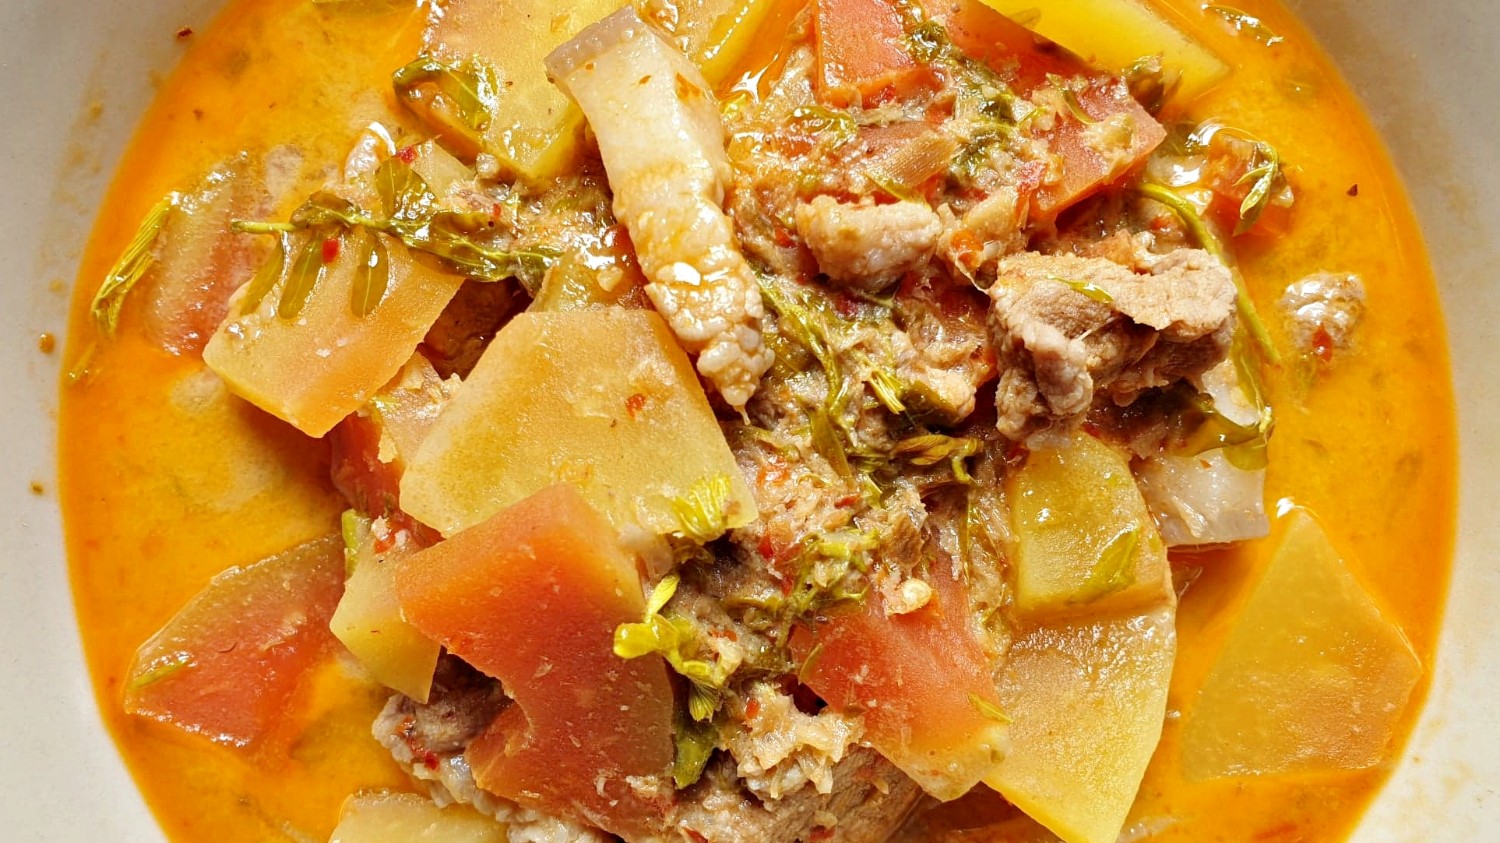 แกงส้มมะละกอ (สูตรคุณพ่อ) เมนูง่ายๆ อาหารพื้นบ้านสุดอร่อย - Mai's Kitchen -  Pantip